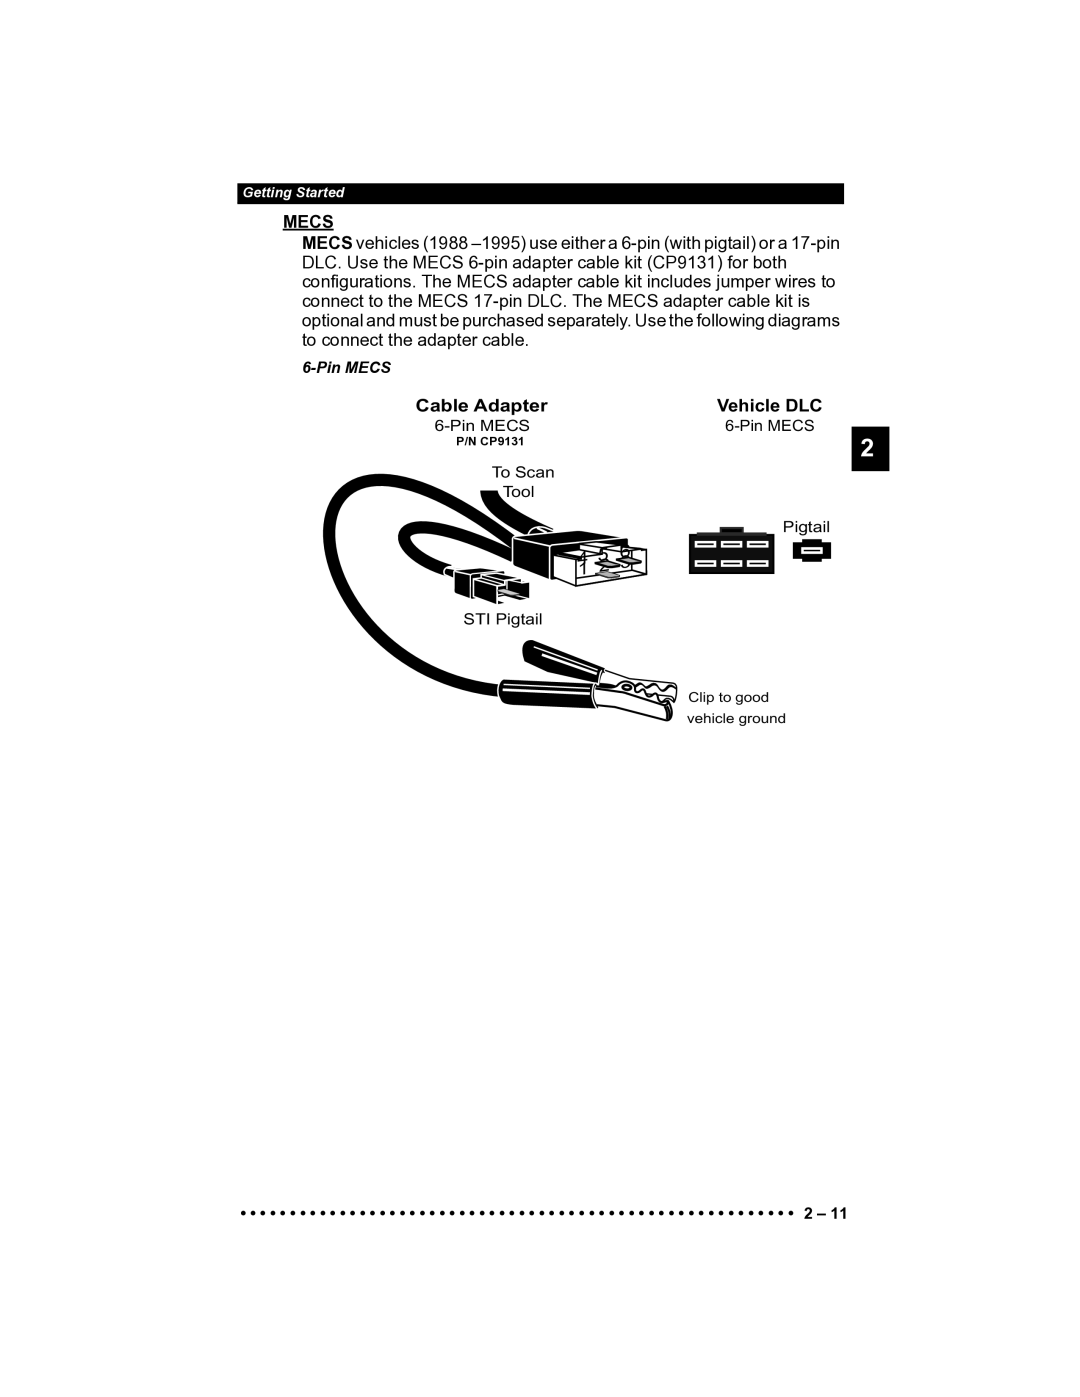 Actron CP9185 manual Mecs, Cable Adapter Vehicle DLC 